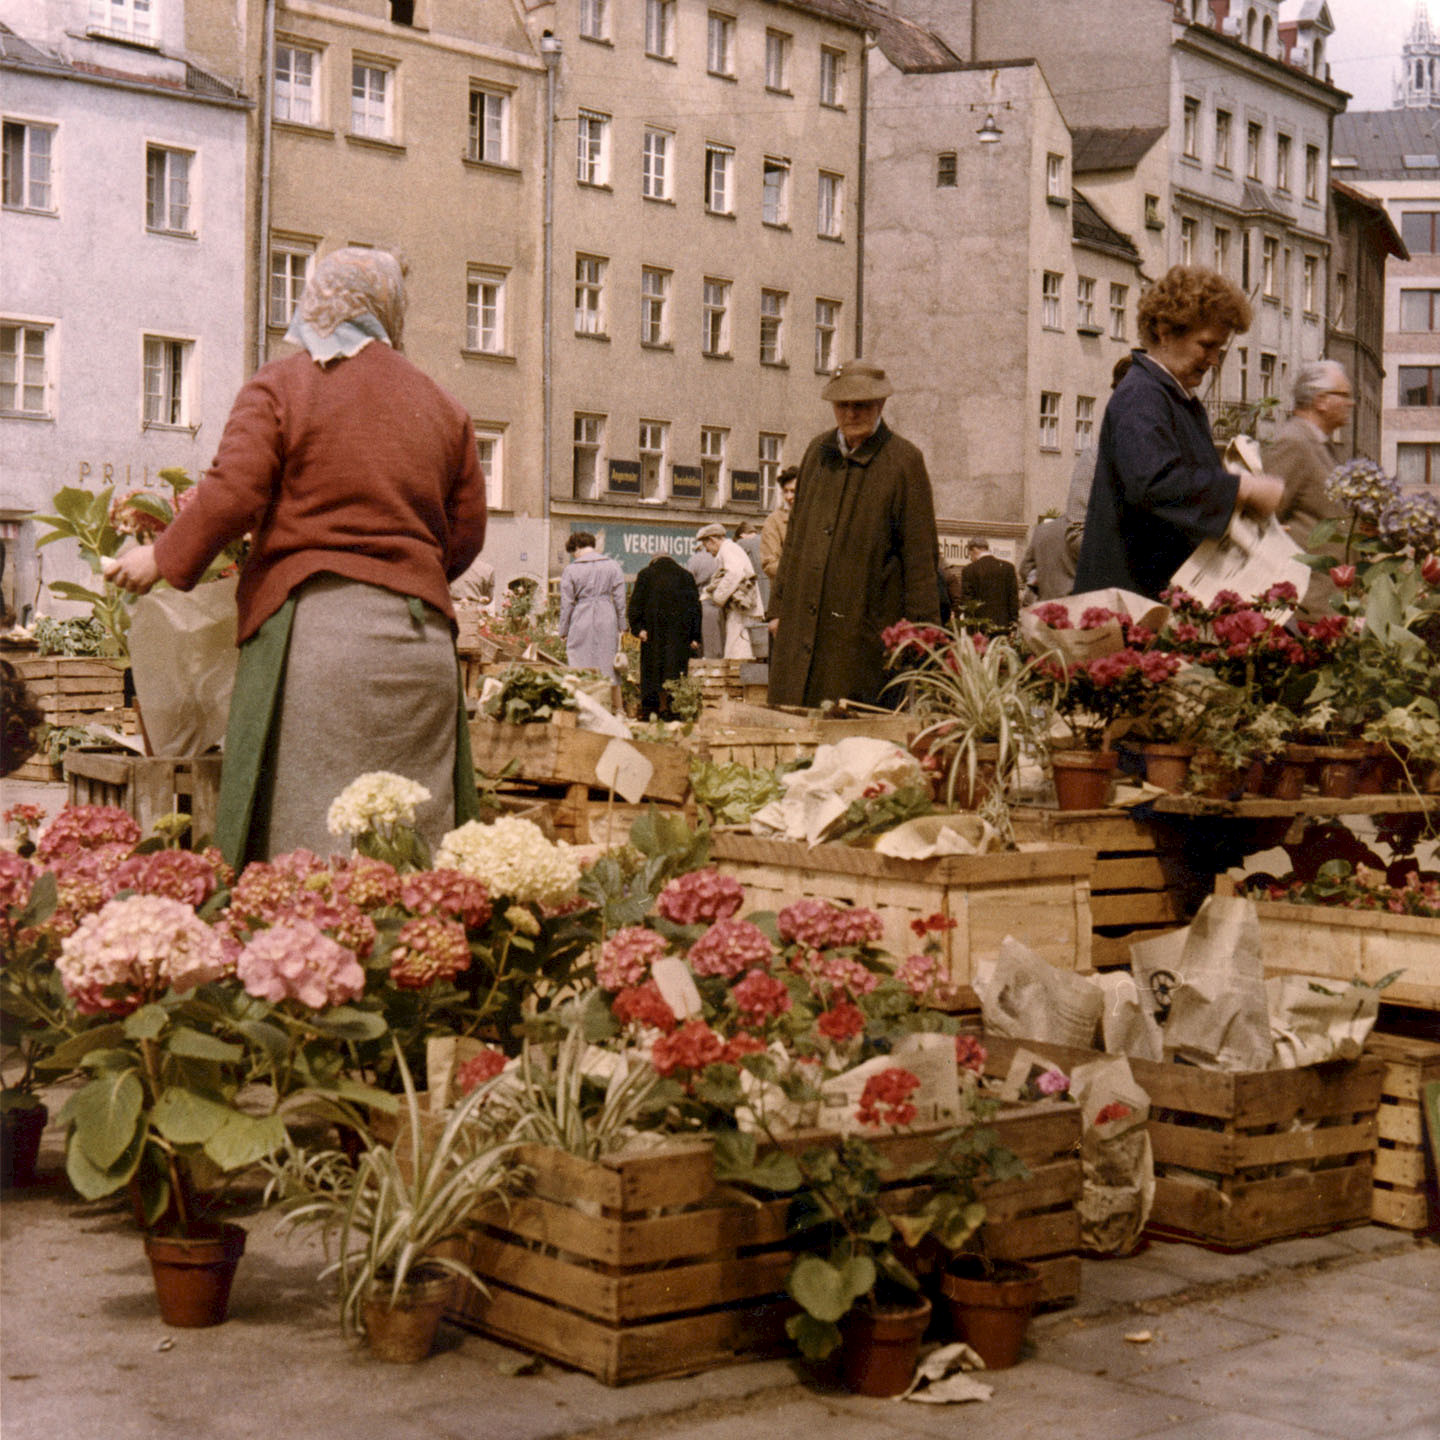 Blumenmarkt von Herbert Wendling